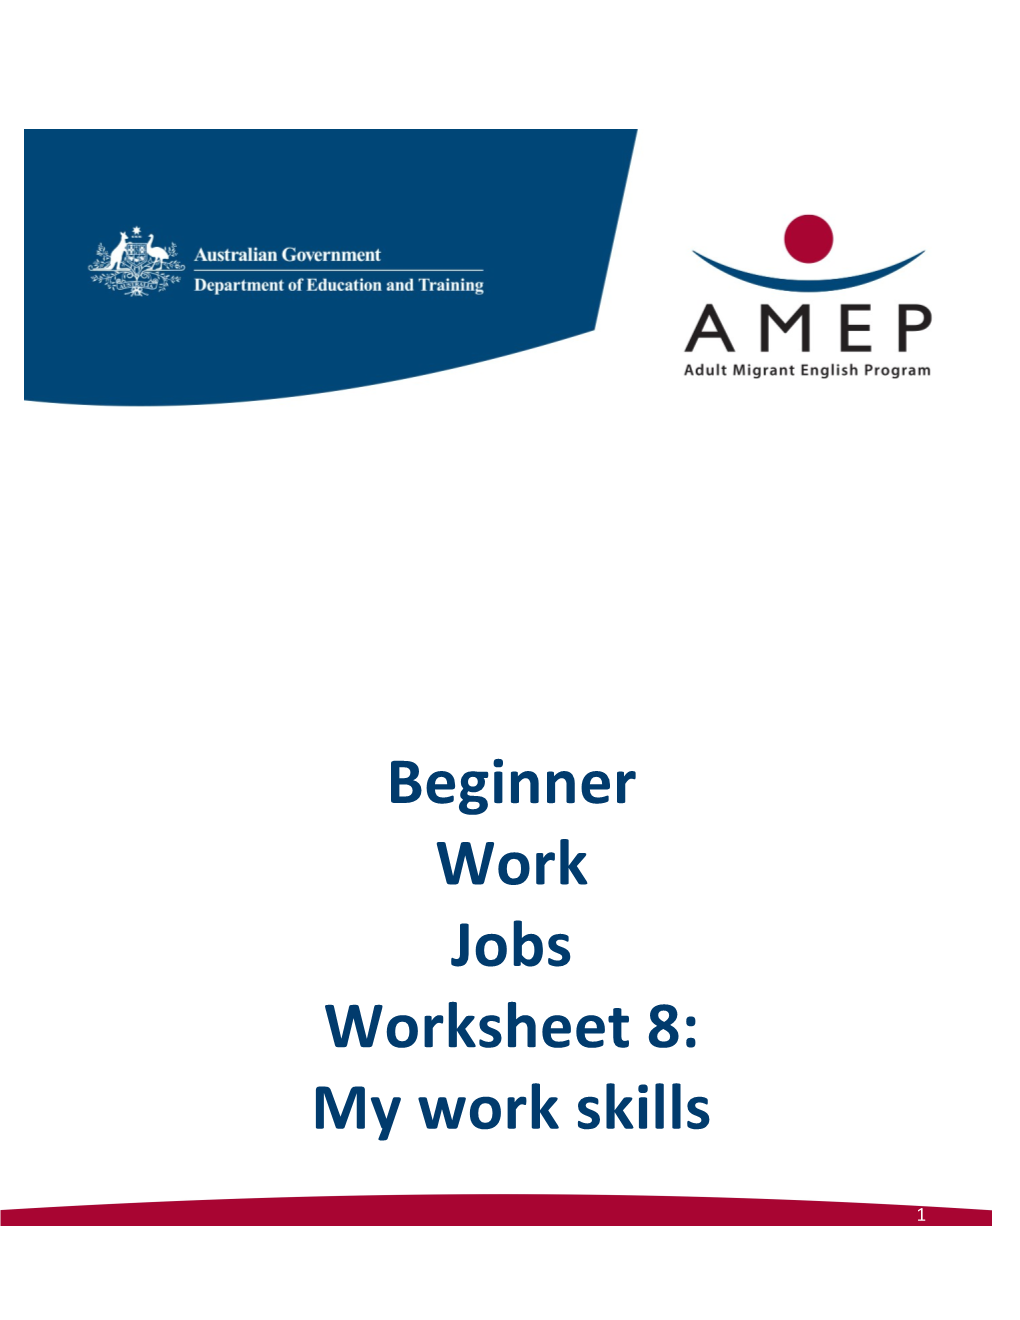 Beginner Work Jobs Worksheet 8: My Work Skills